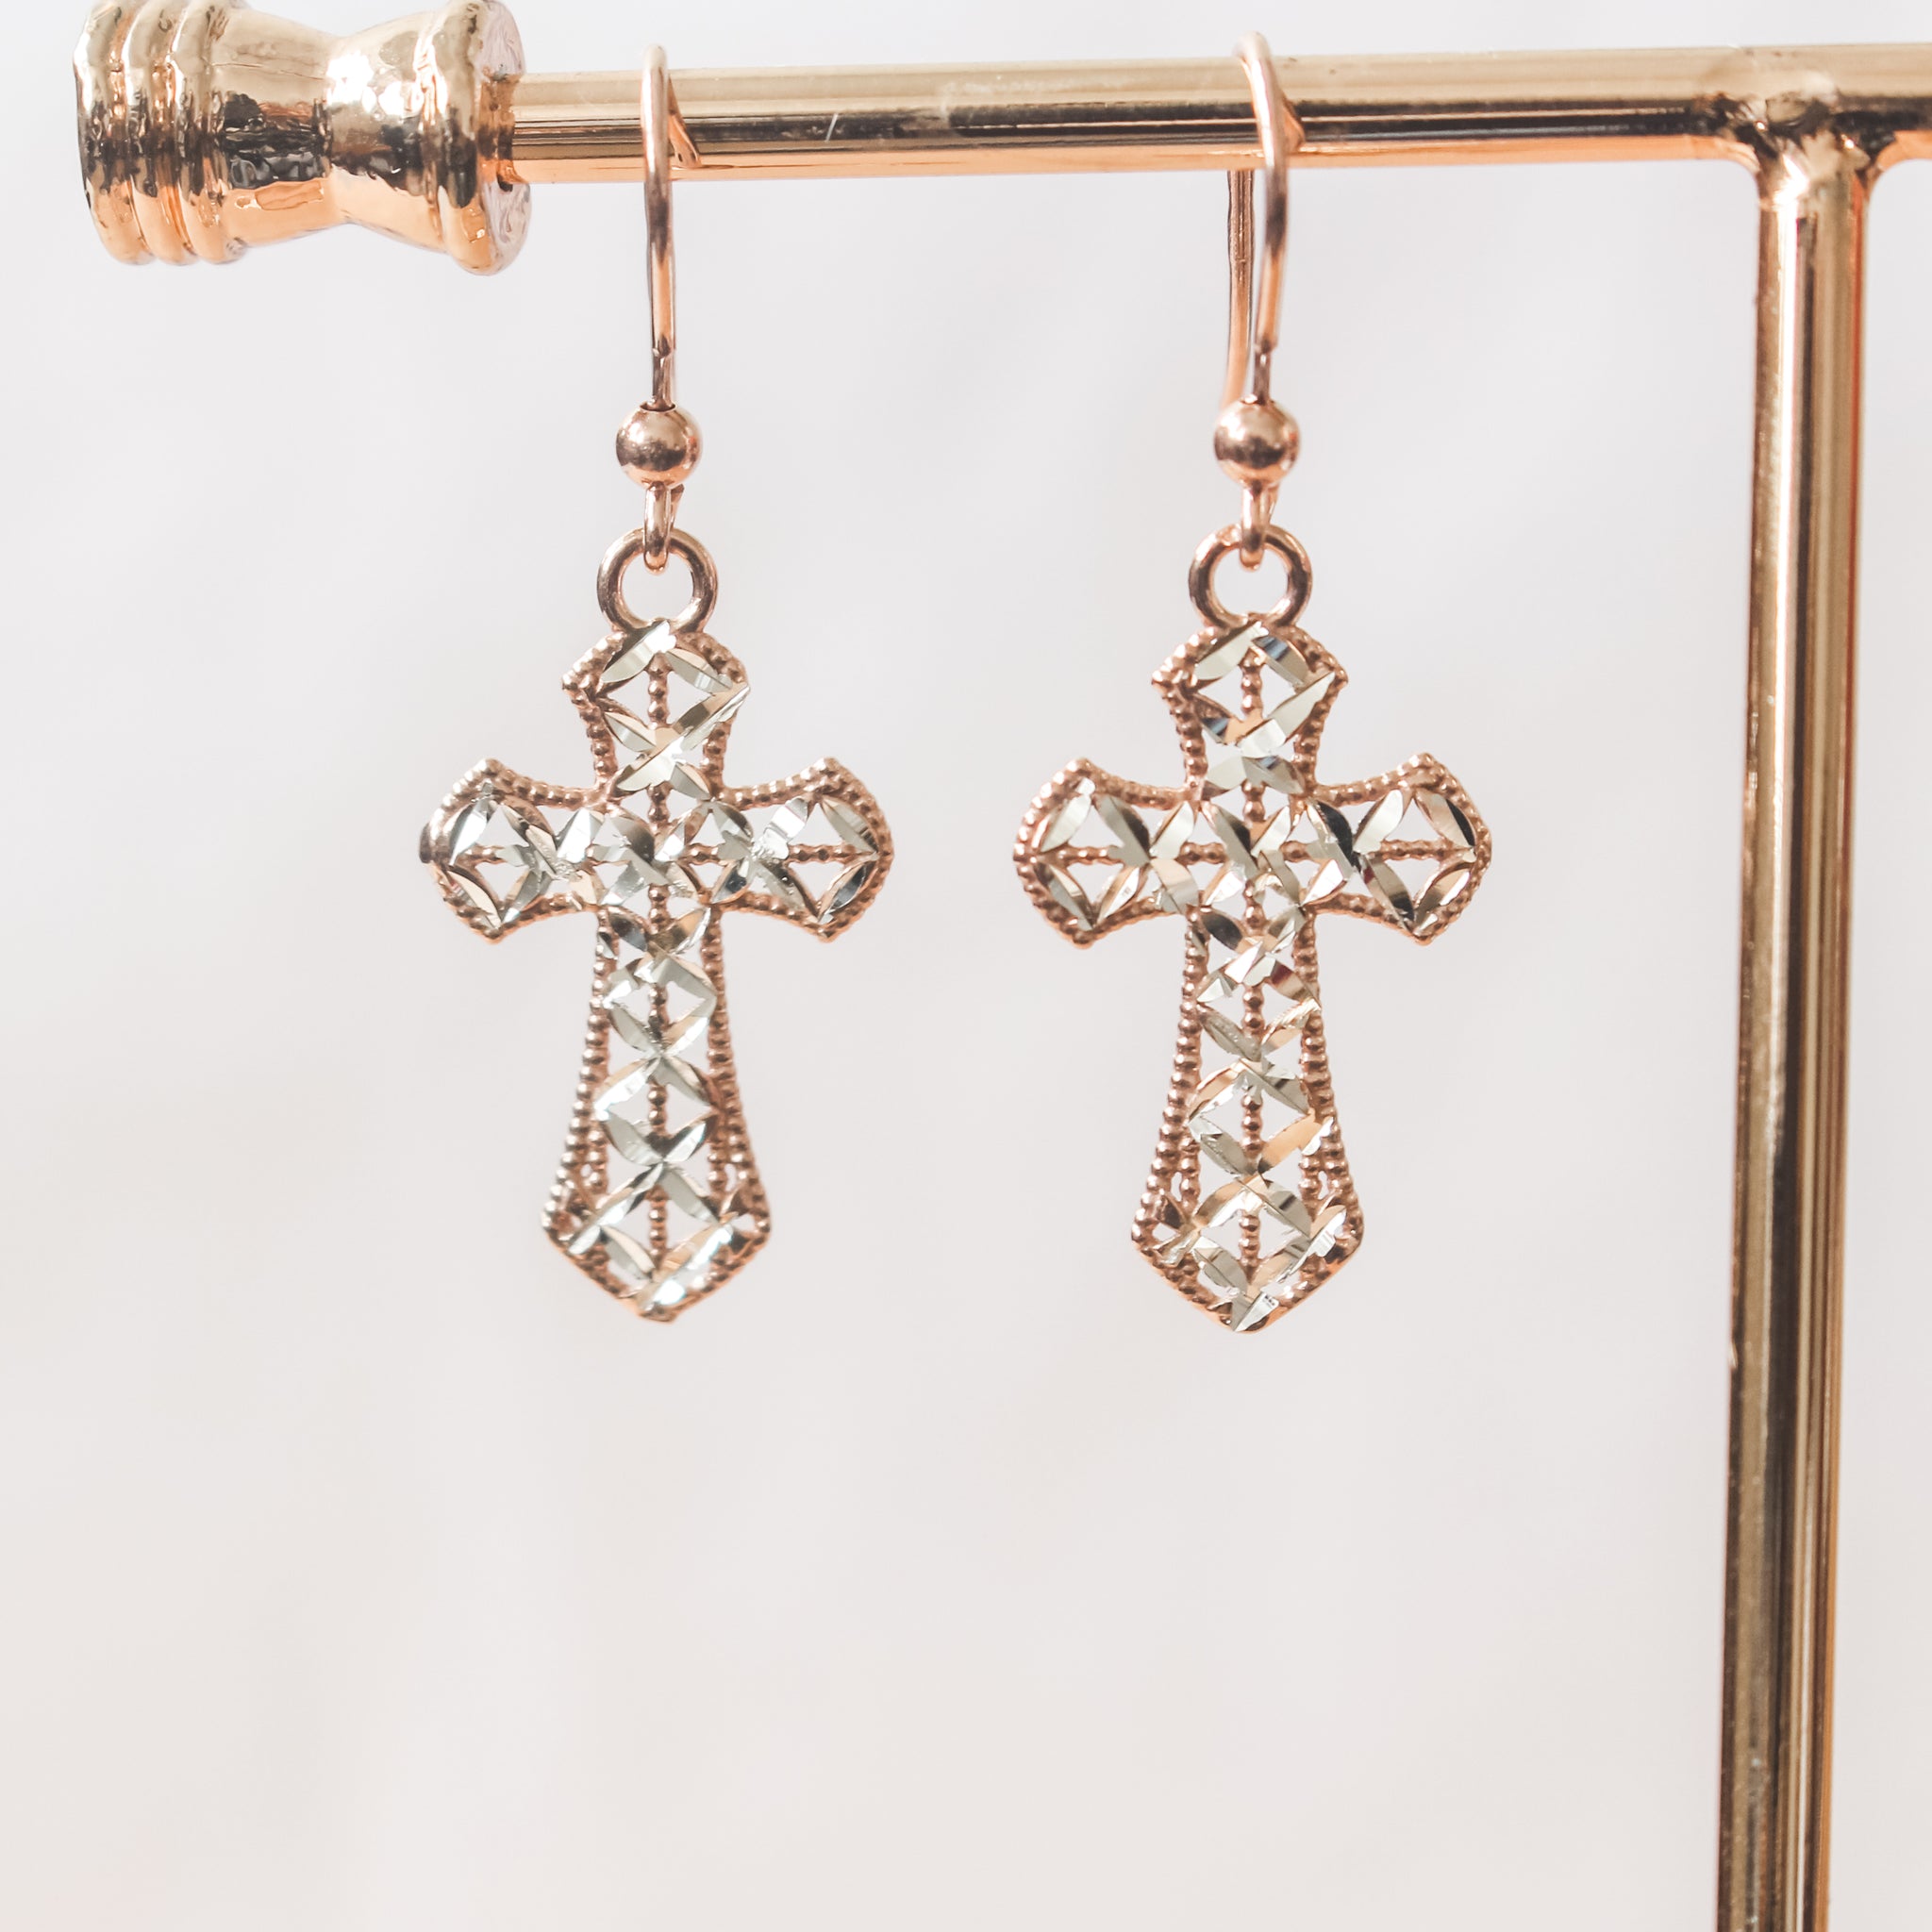 Cross Earrings - 925 Italian Silver Rose Gold Plated Filigree Cross Earrings